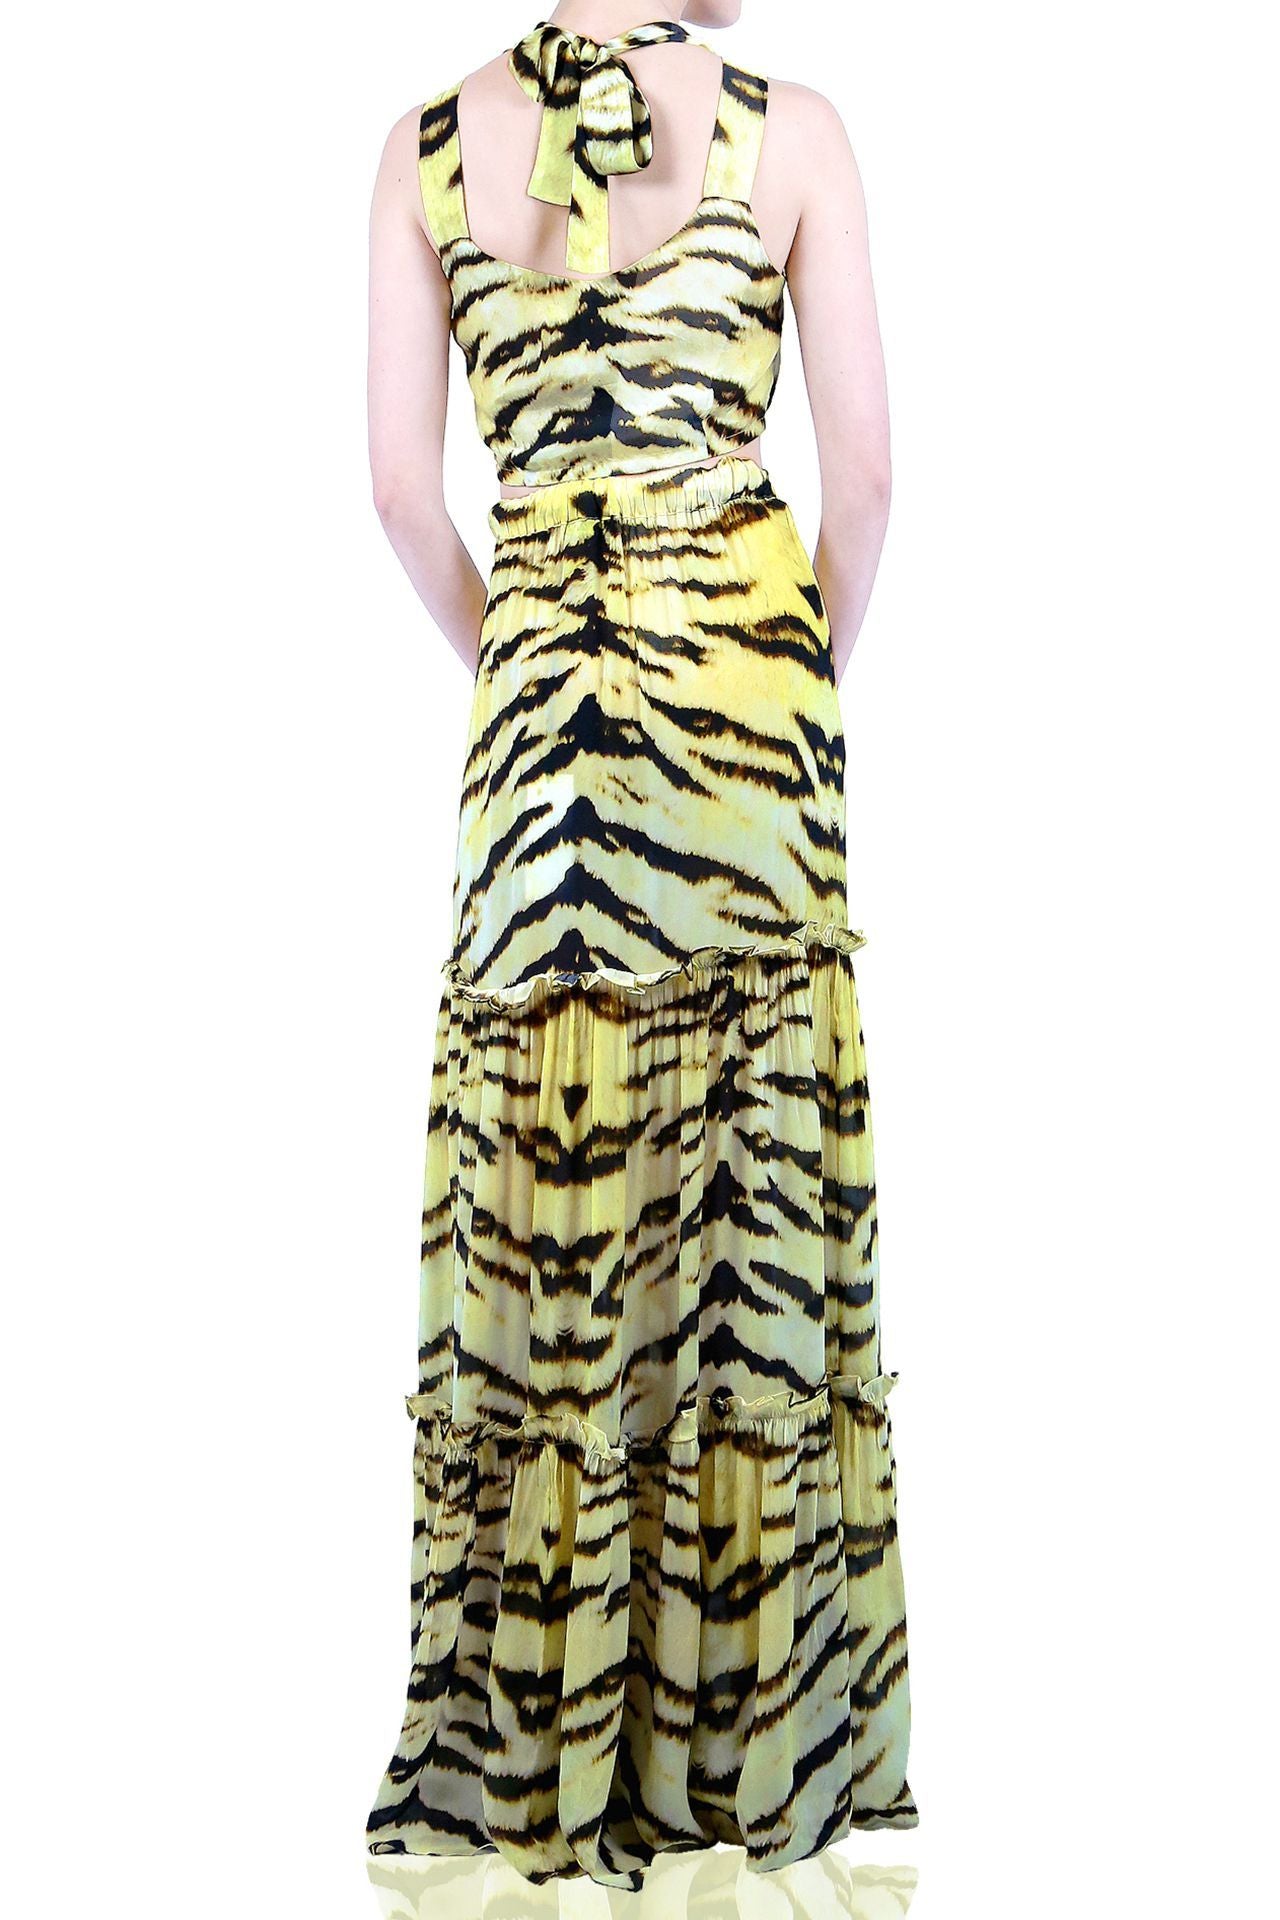 Tiger Print Maxi Skirt Set